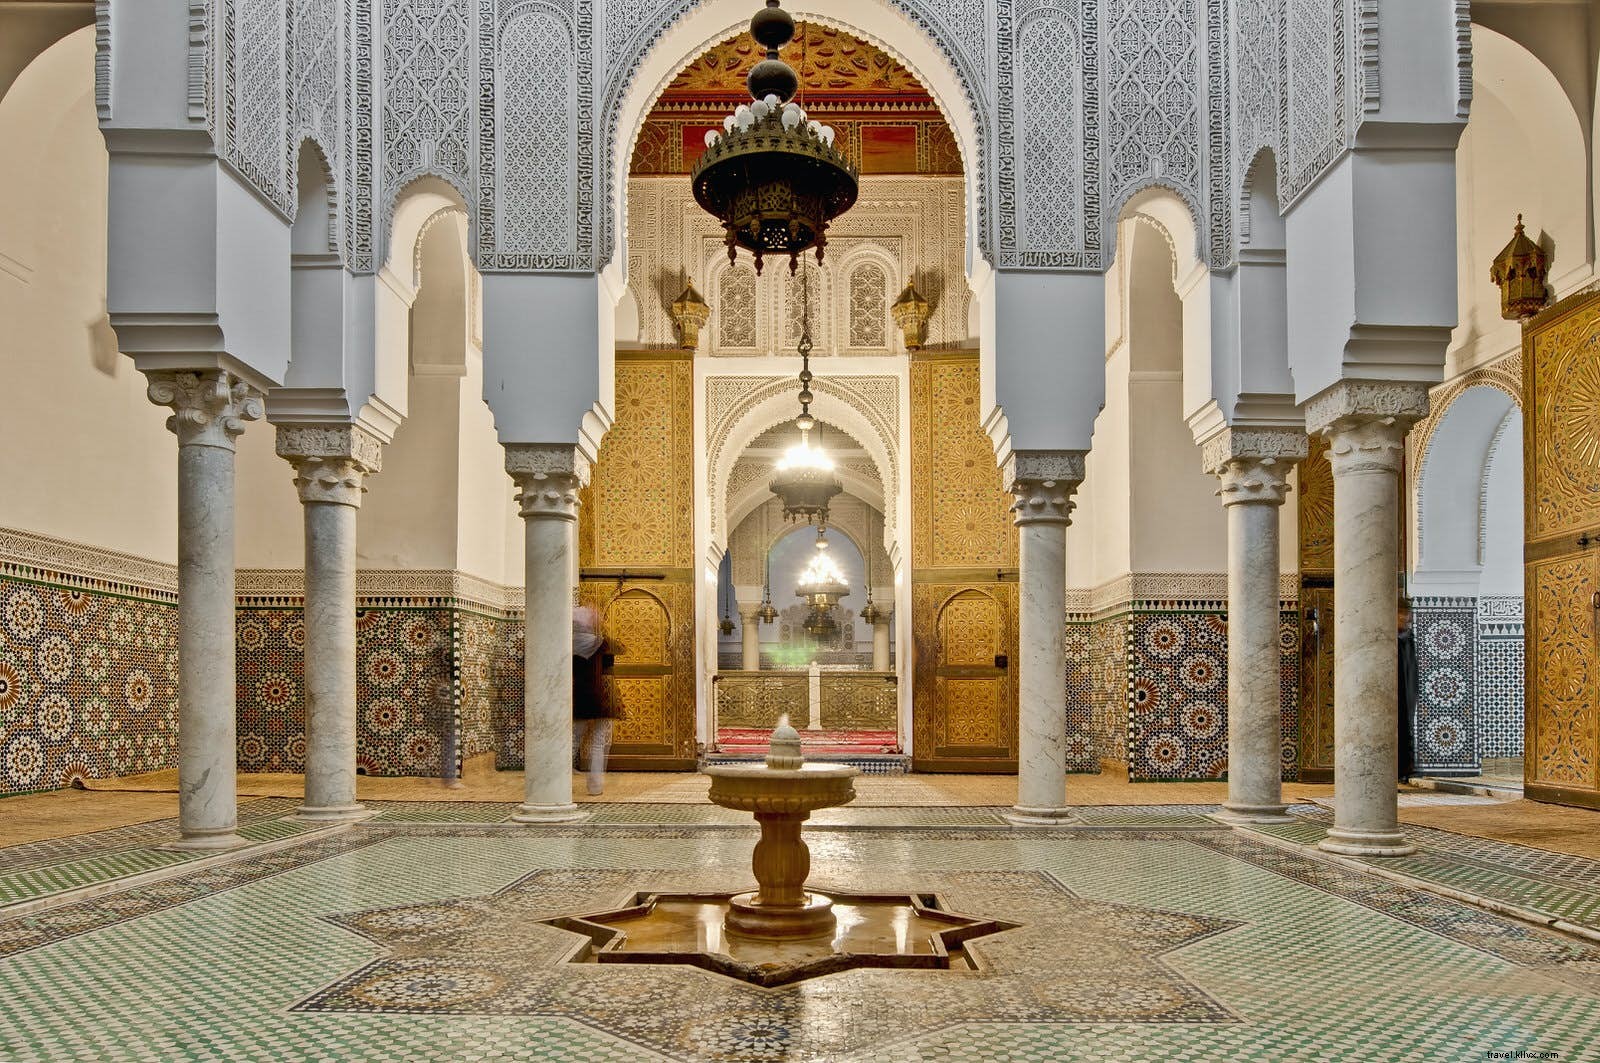 Come trascorrere la giornata perfetta nella Meknes imperiale 